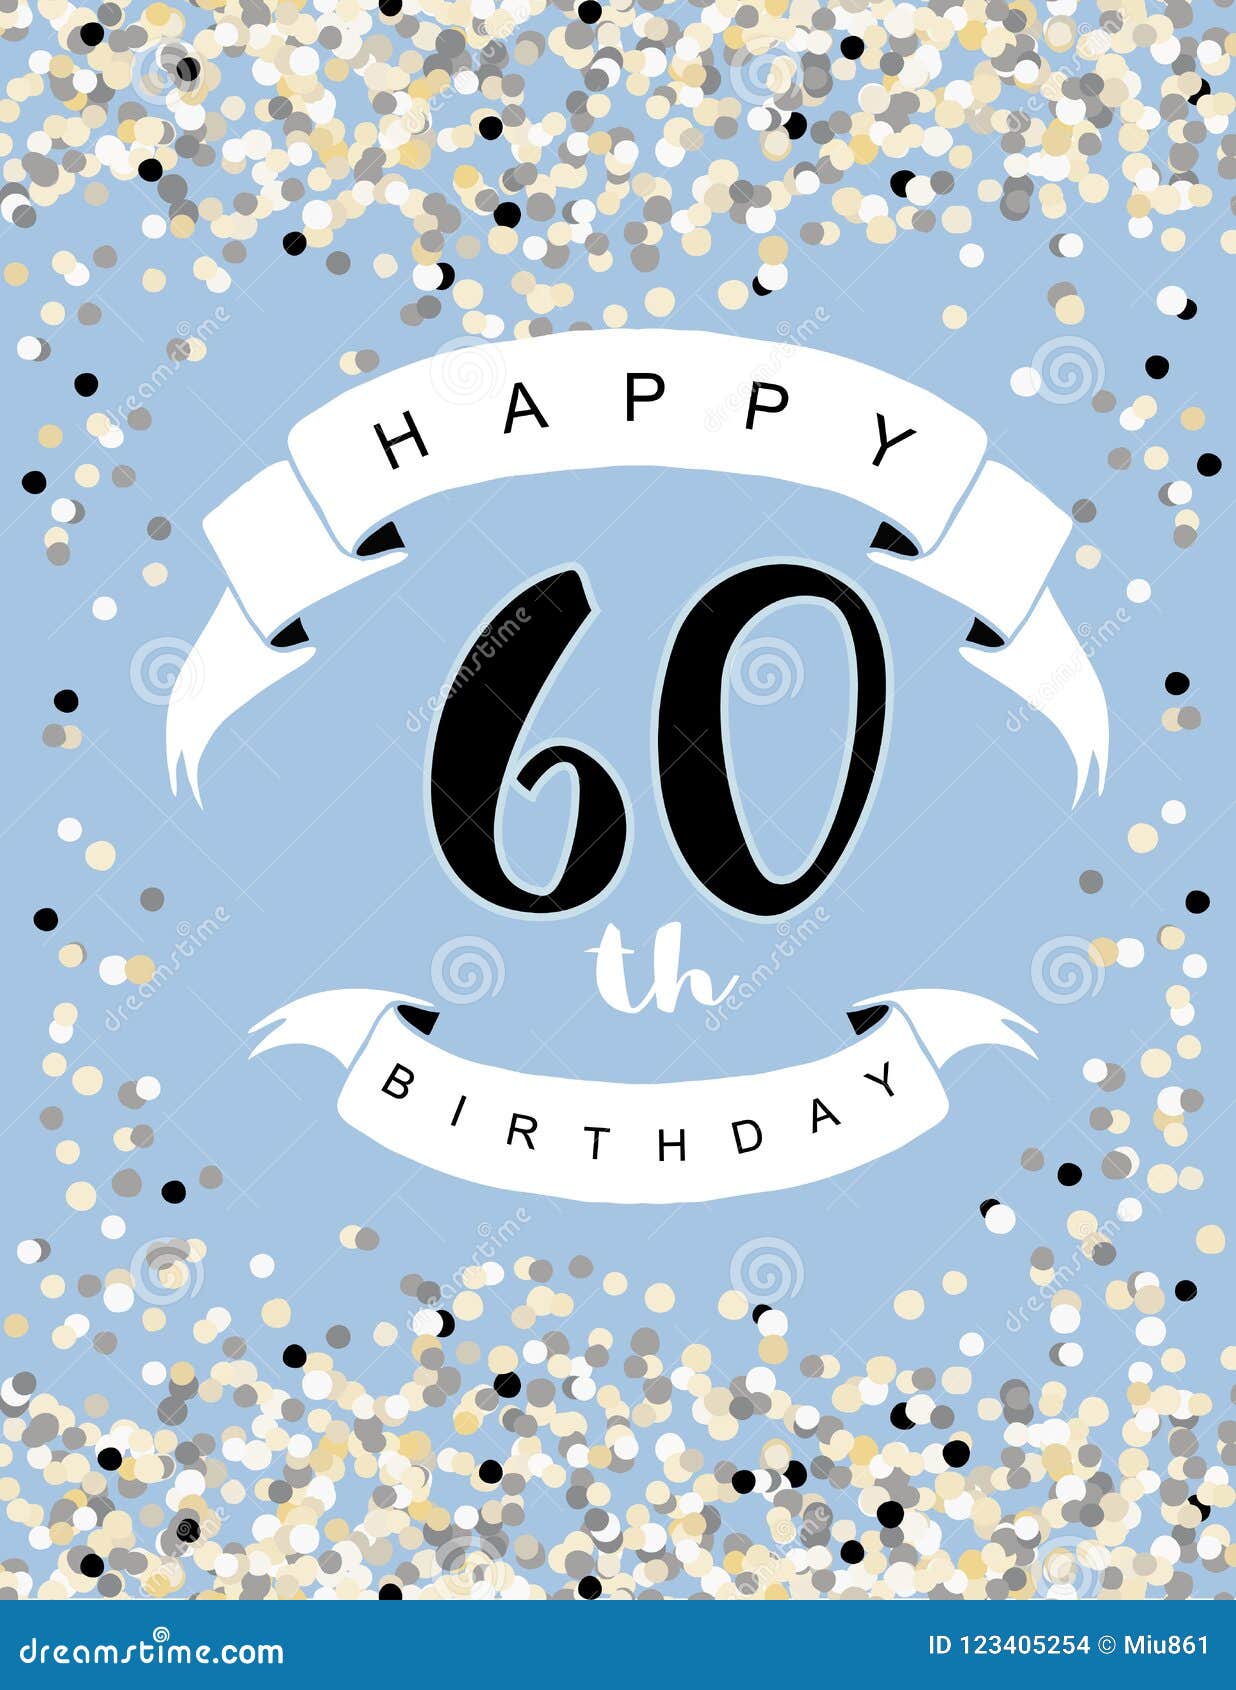 Hình minh họa vector sinh nhật 60 tuổi vui vẻ tràn đầy sắc màu và năng lượng. Nền xanh tươi sáng sẽ giúp bạn cảm thấy trẻ trung hơn, vui vẻ hơn và tăng thêm khí thế cho bữa tiệc sinh nhật đáng nhớ này. 